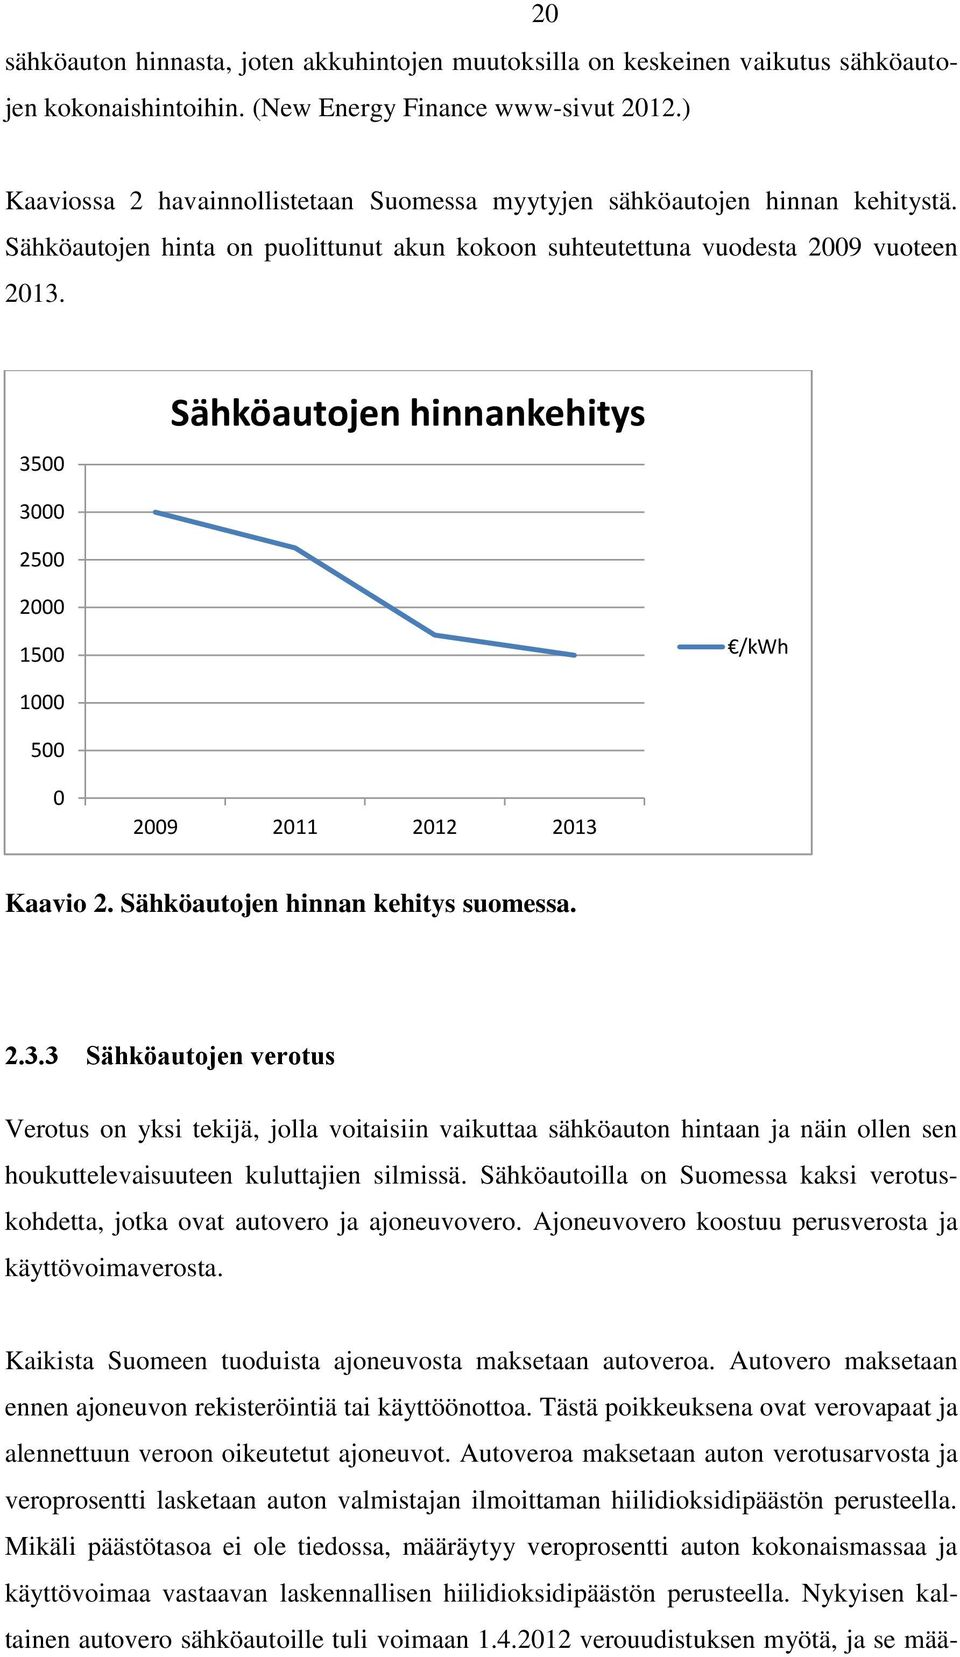 3500 Sähköautojen hinnankehitys 3000 2500 2000 1500 /kwh 1000 500 0 2009 2011 2012 2013 Kaavio 2. Sähköautojen hinnan kehitys suomessa. 2.3.3 Sähköautojen verotus Verotus on yksi tekijä, jolla voitaisiin vaikuttaa sähköauton hintaan ja näin ollen sen houkuttelevaisuuteen kuluttajien silmissä.